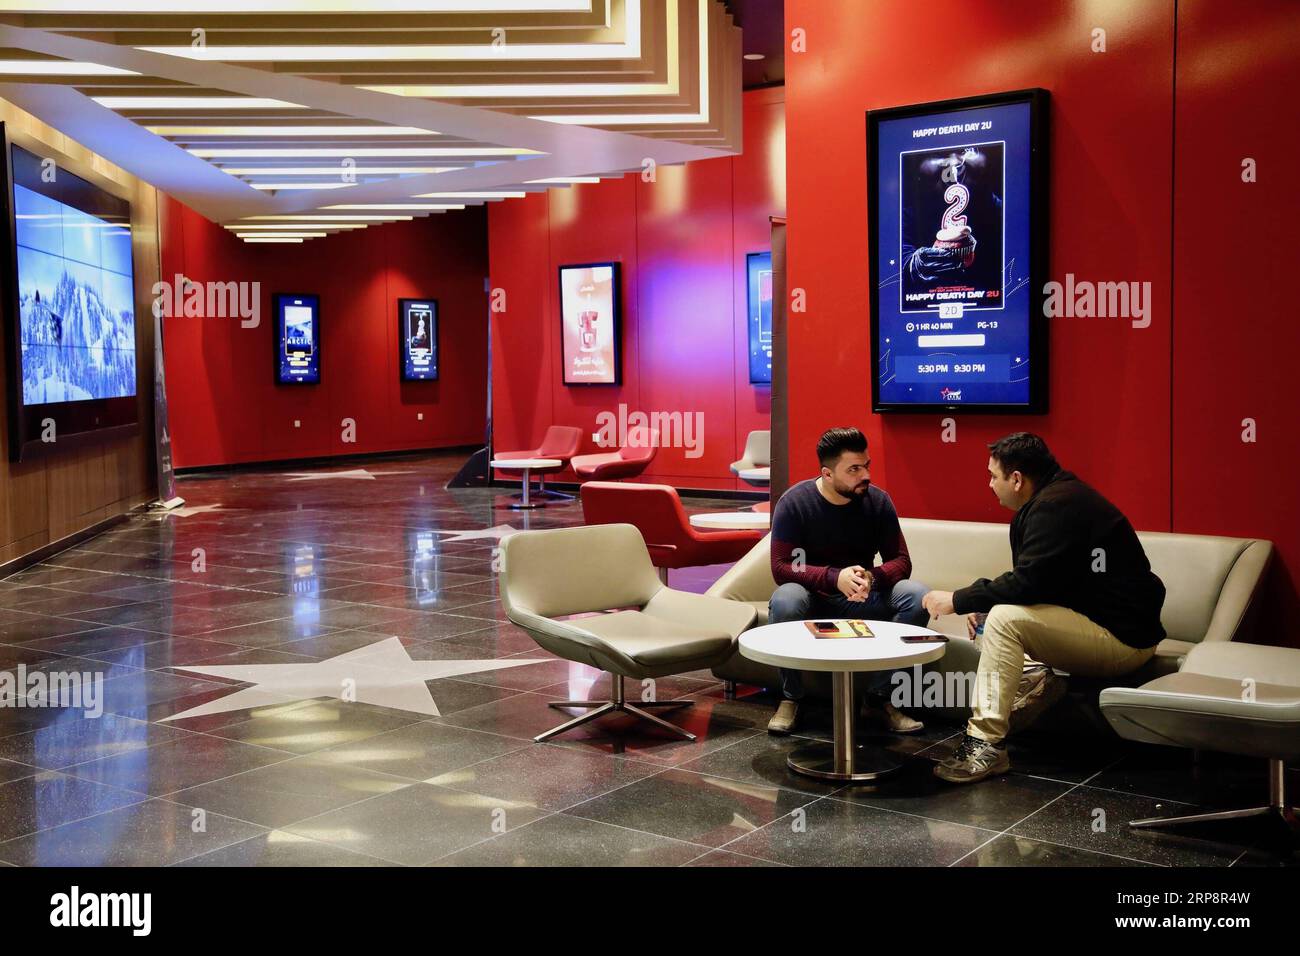 (190313) -- BAGDAD, 13. März 2019 (Xinhua) -- Foto aufgenommen am 21. Februar 2019 zeigt zwei irakische Männer in einem Kino in Bagdad, Irak. ZU DEN Features: Moderne Kinos MIT mehreren Bildschirmen ziehen begeisterte irakische Kinobesucher an, während die berühmten Kinos (Xinhua/Khalil Dawood) IRAK-BAGDAD-KINO PUBLICATIONxNOTxINxCHN verschwinden Stockfoto